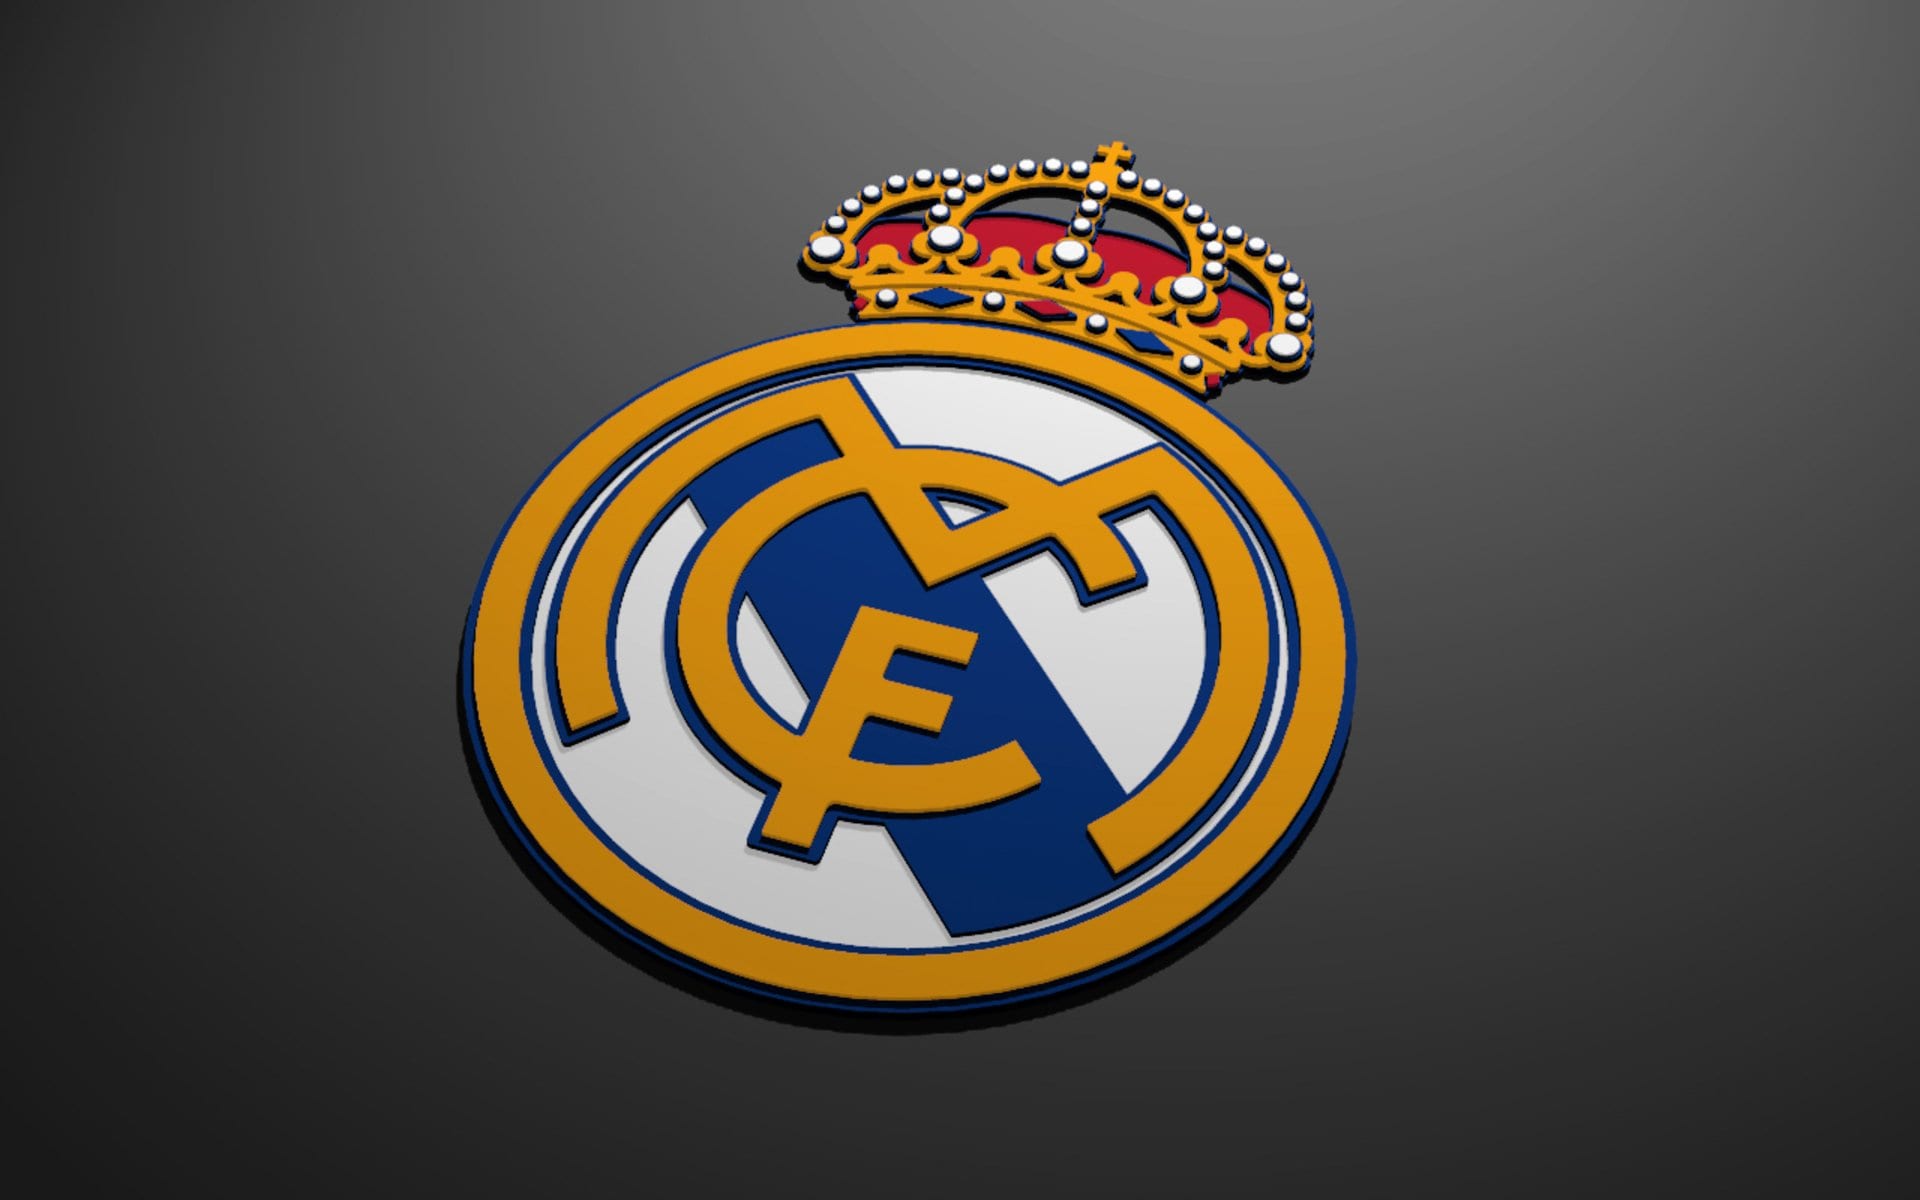  Real  Madrid  Escudo  Un nuevo escudo  para el Real  Madrid  